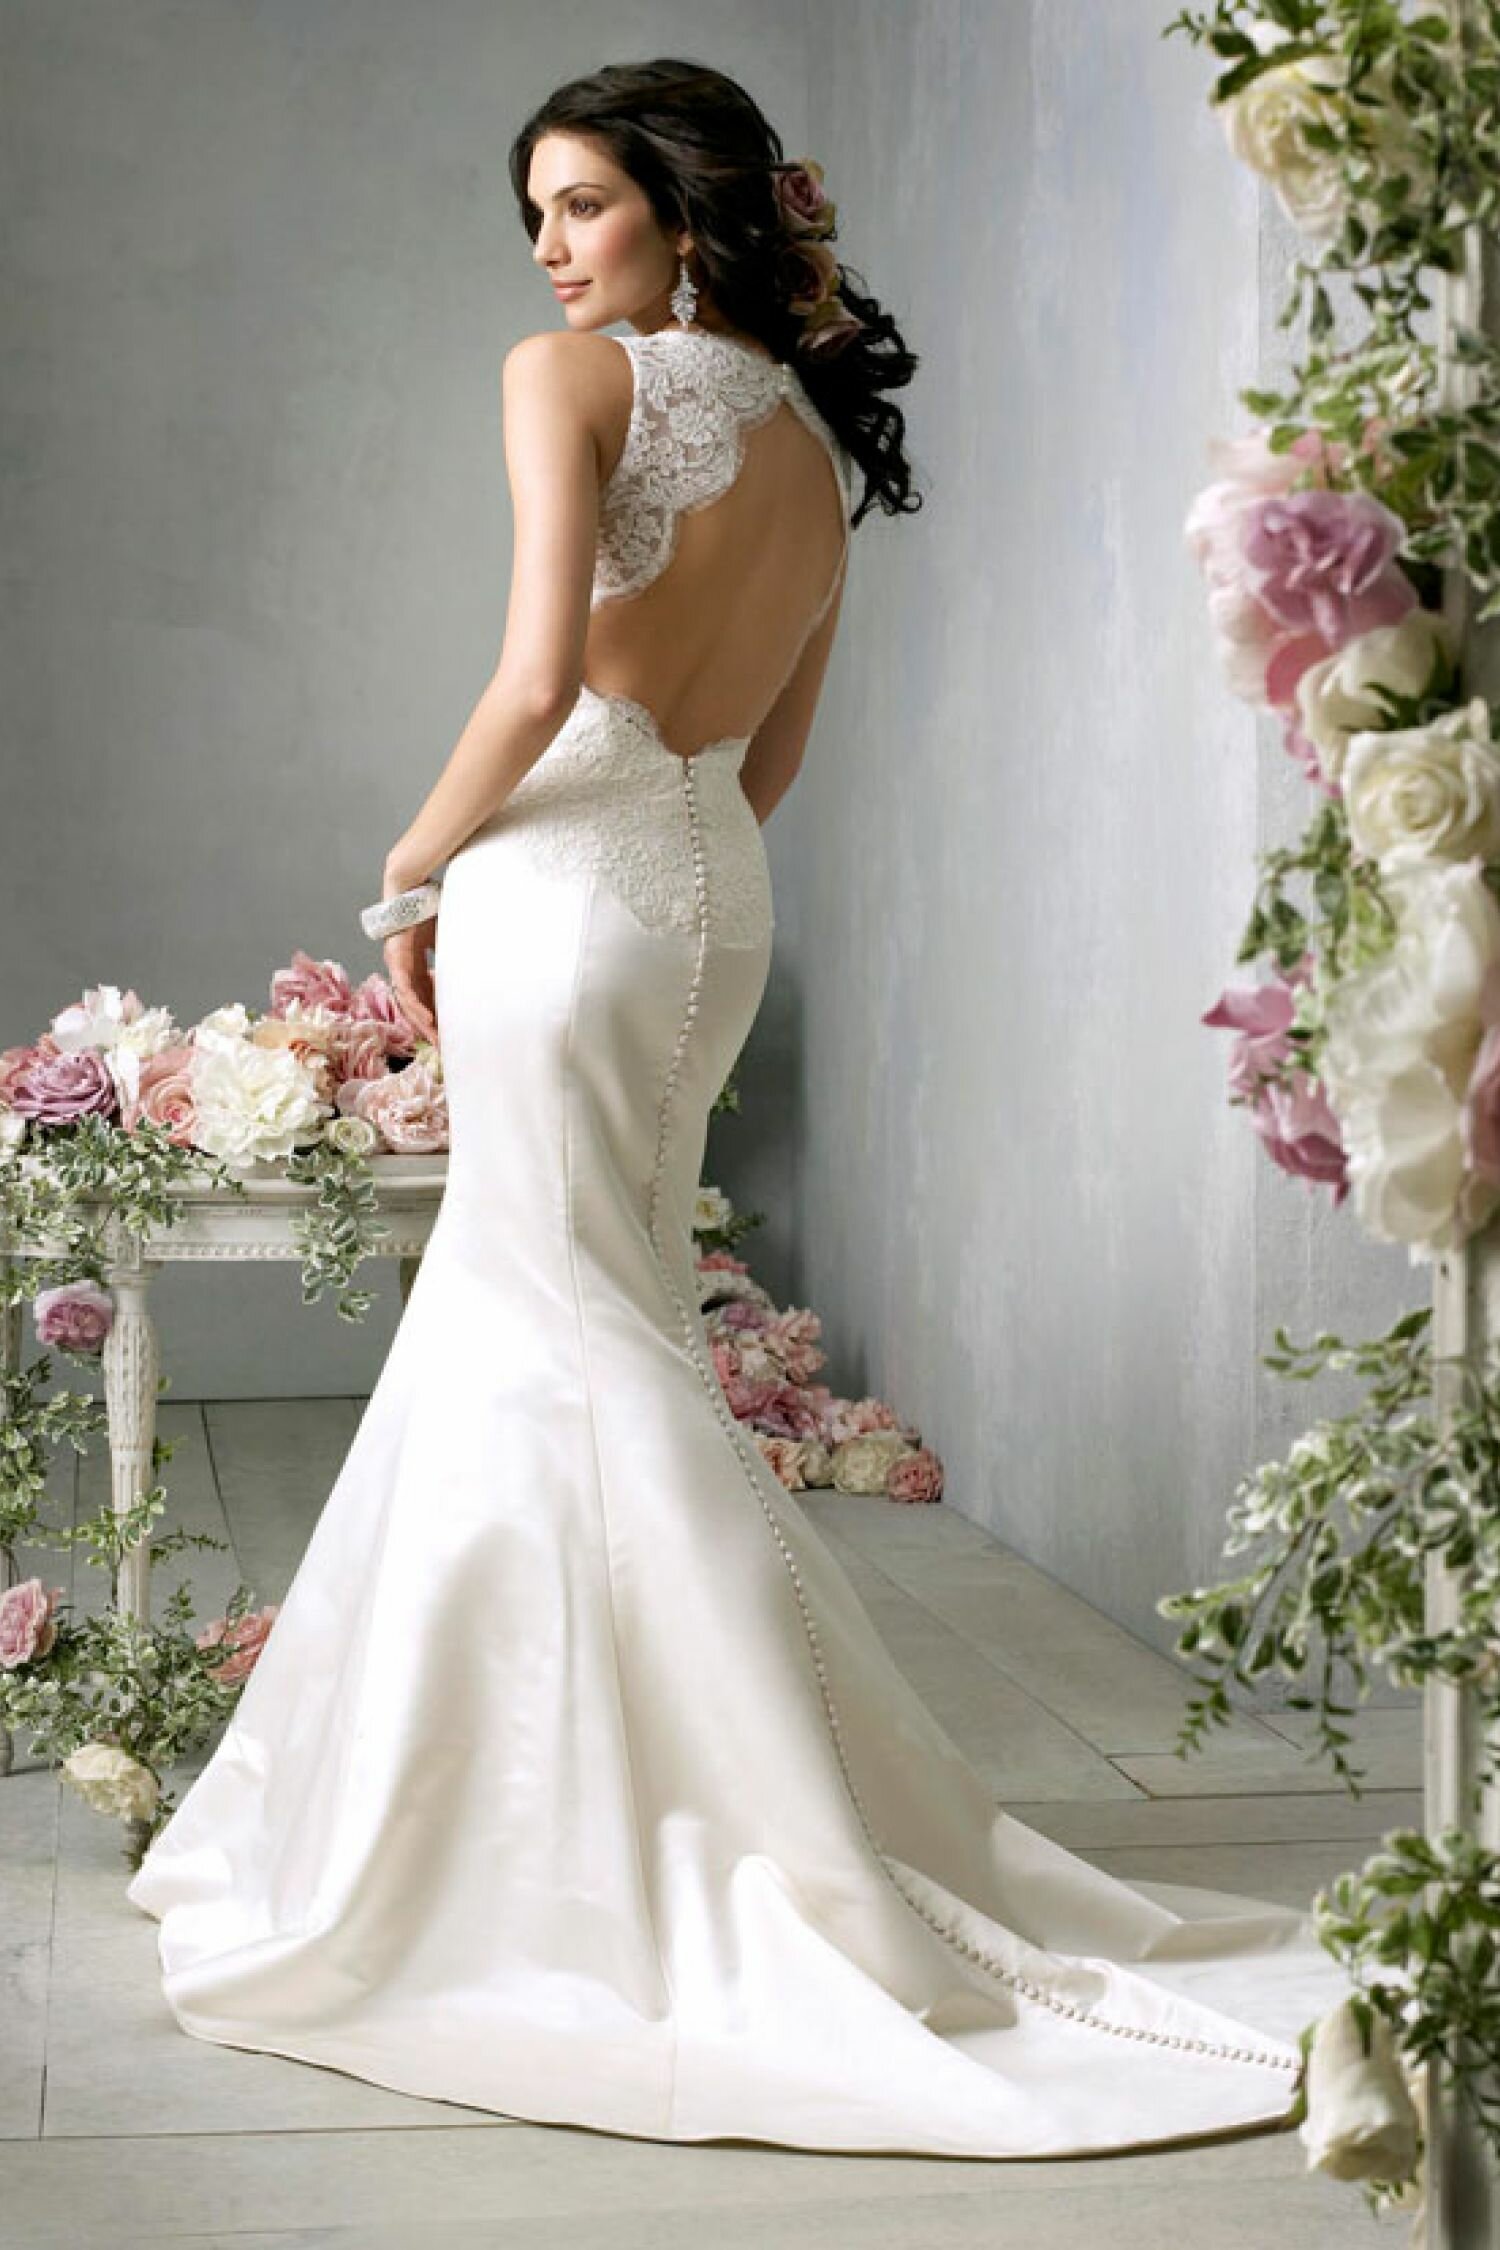 Amazing wedding dresses Photo - 3